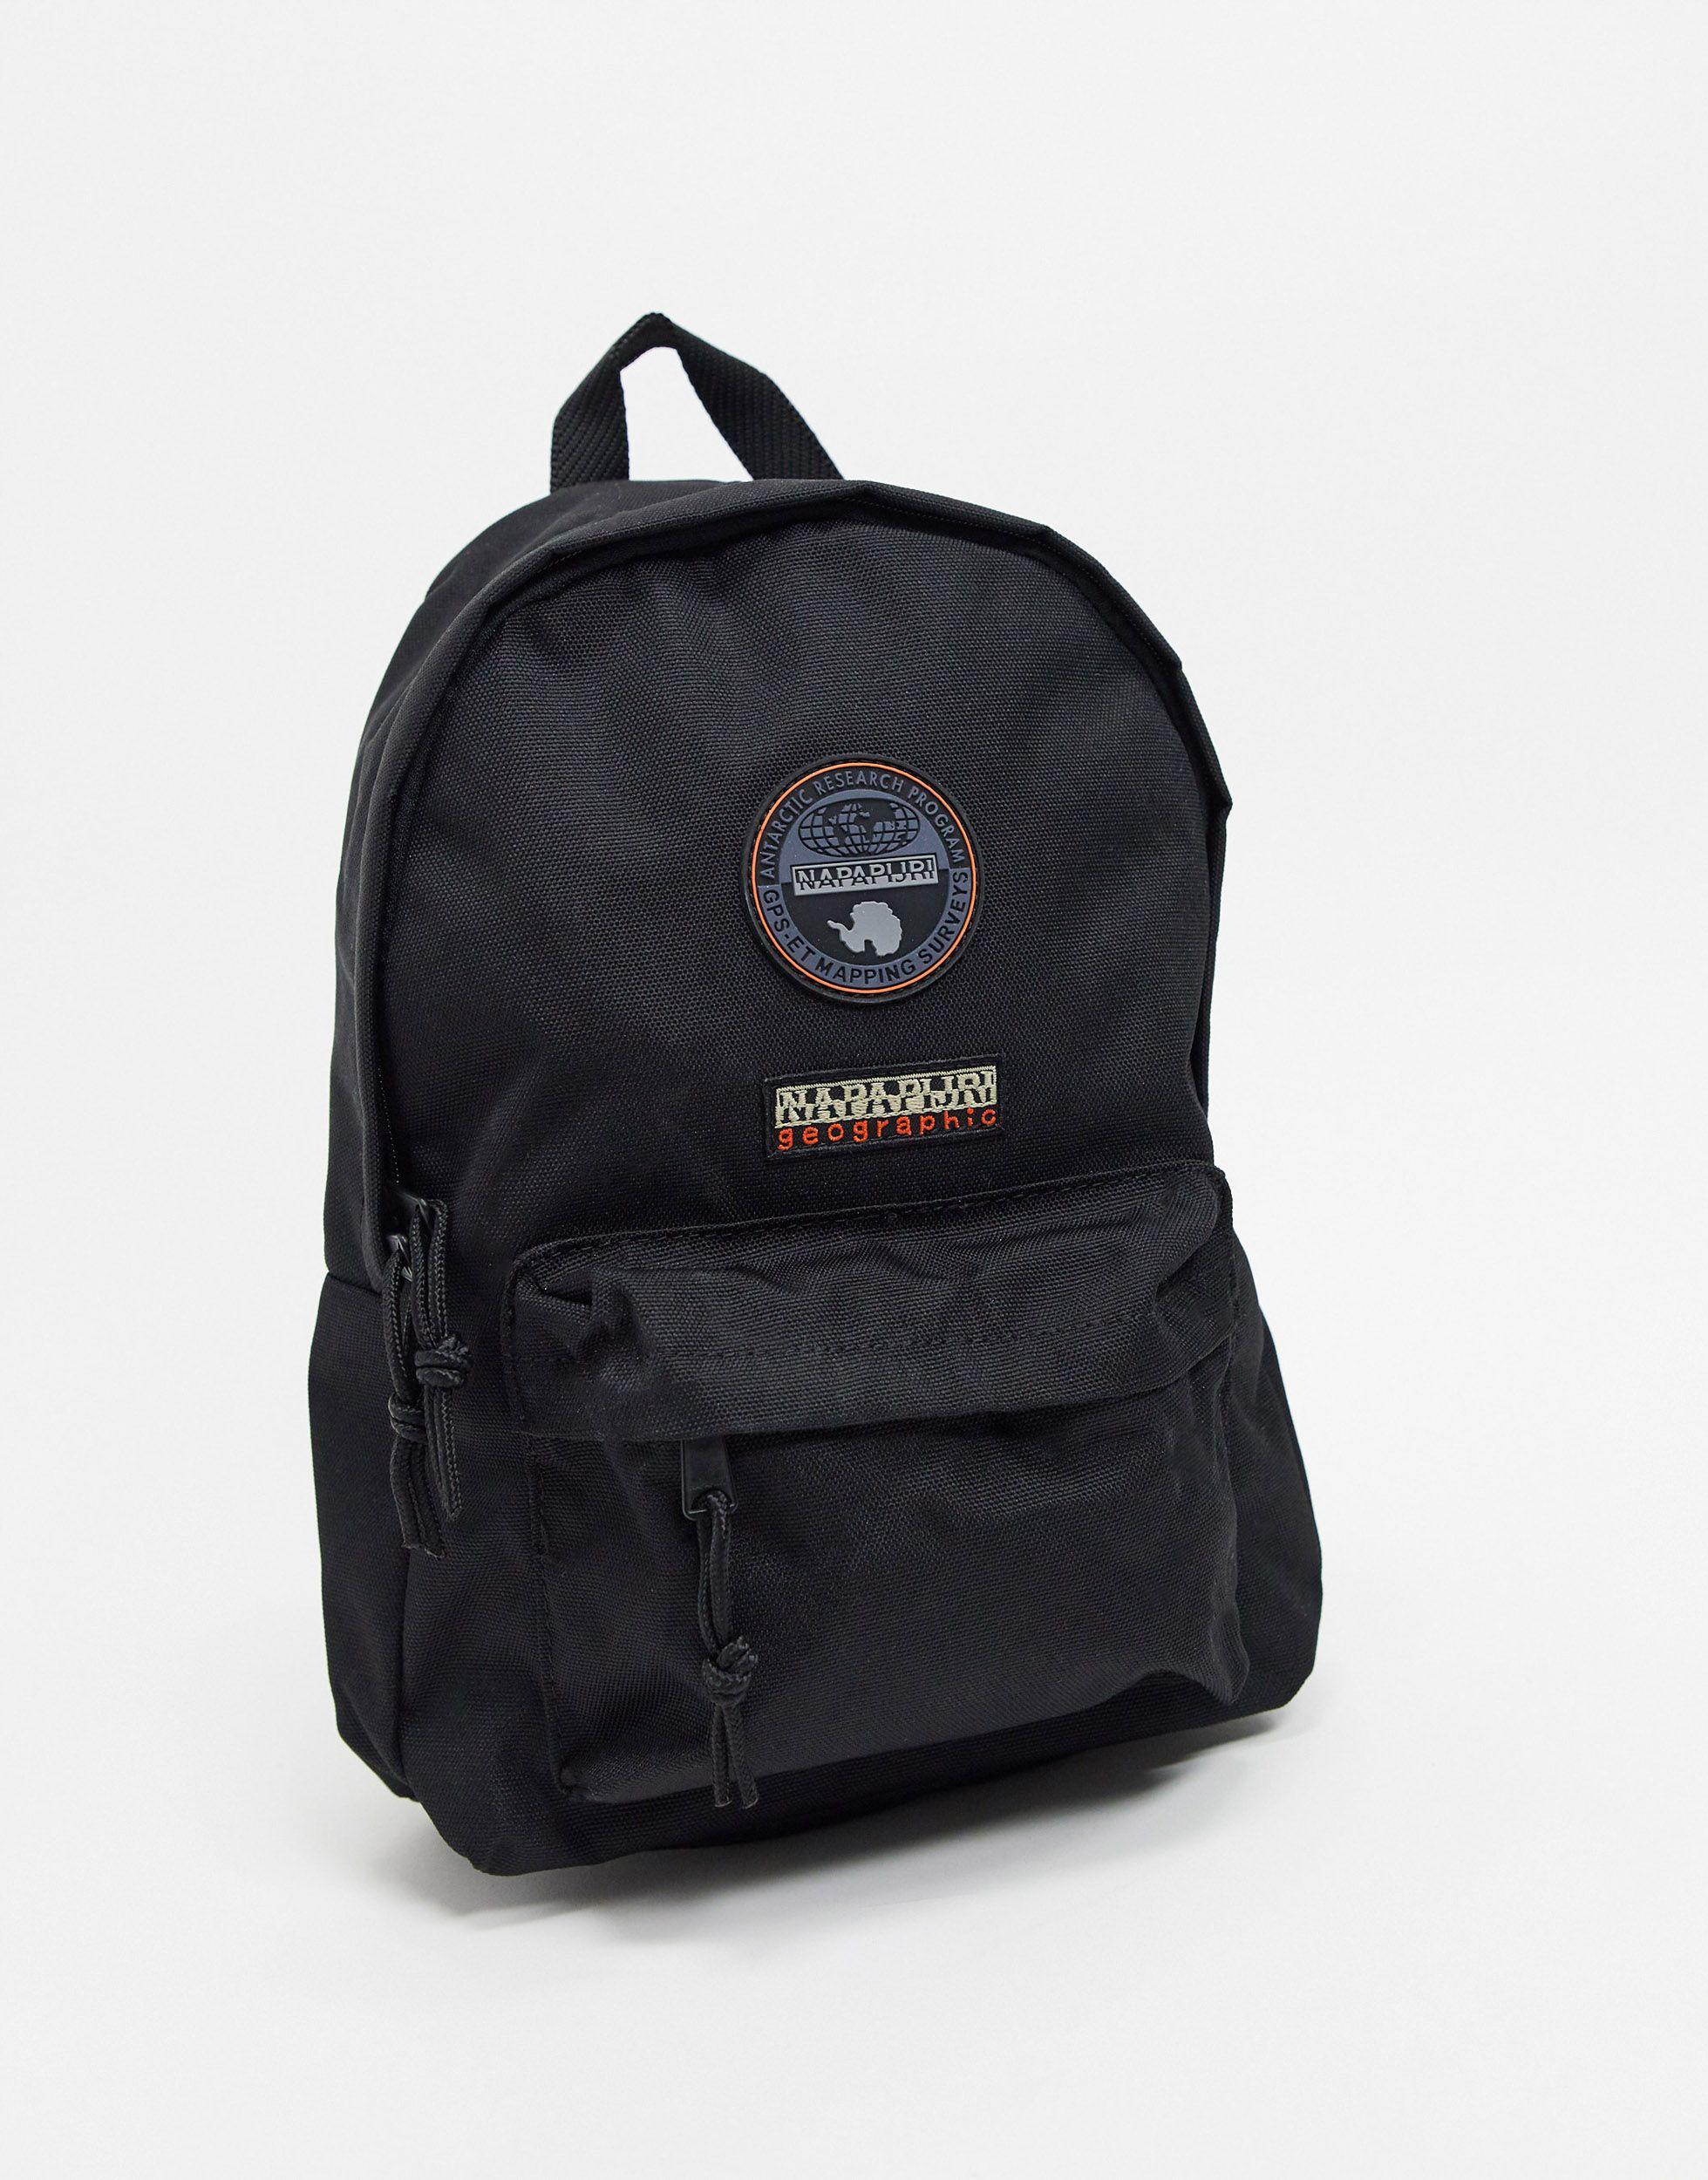 Napapijri Voyage Mini Backpack in Black | Lyst UK